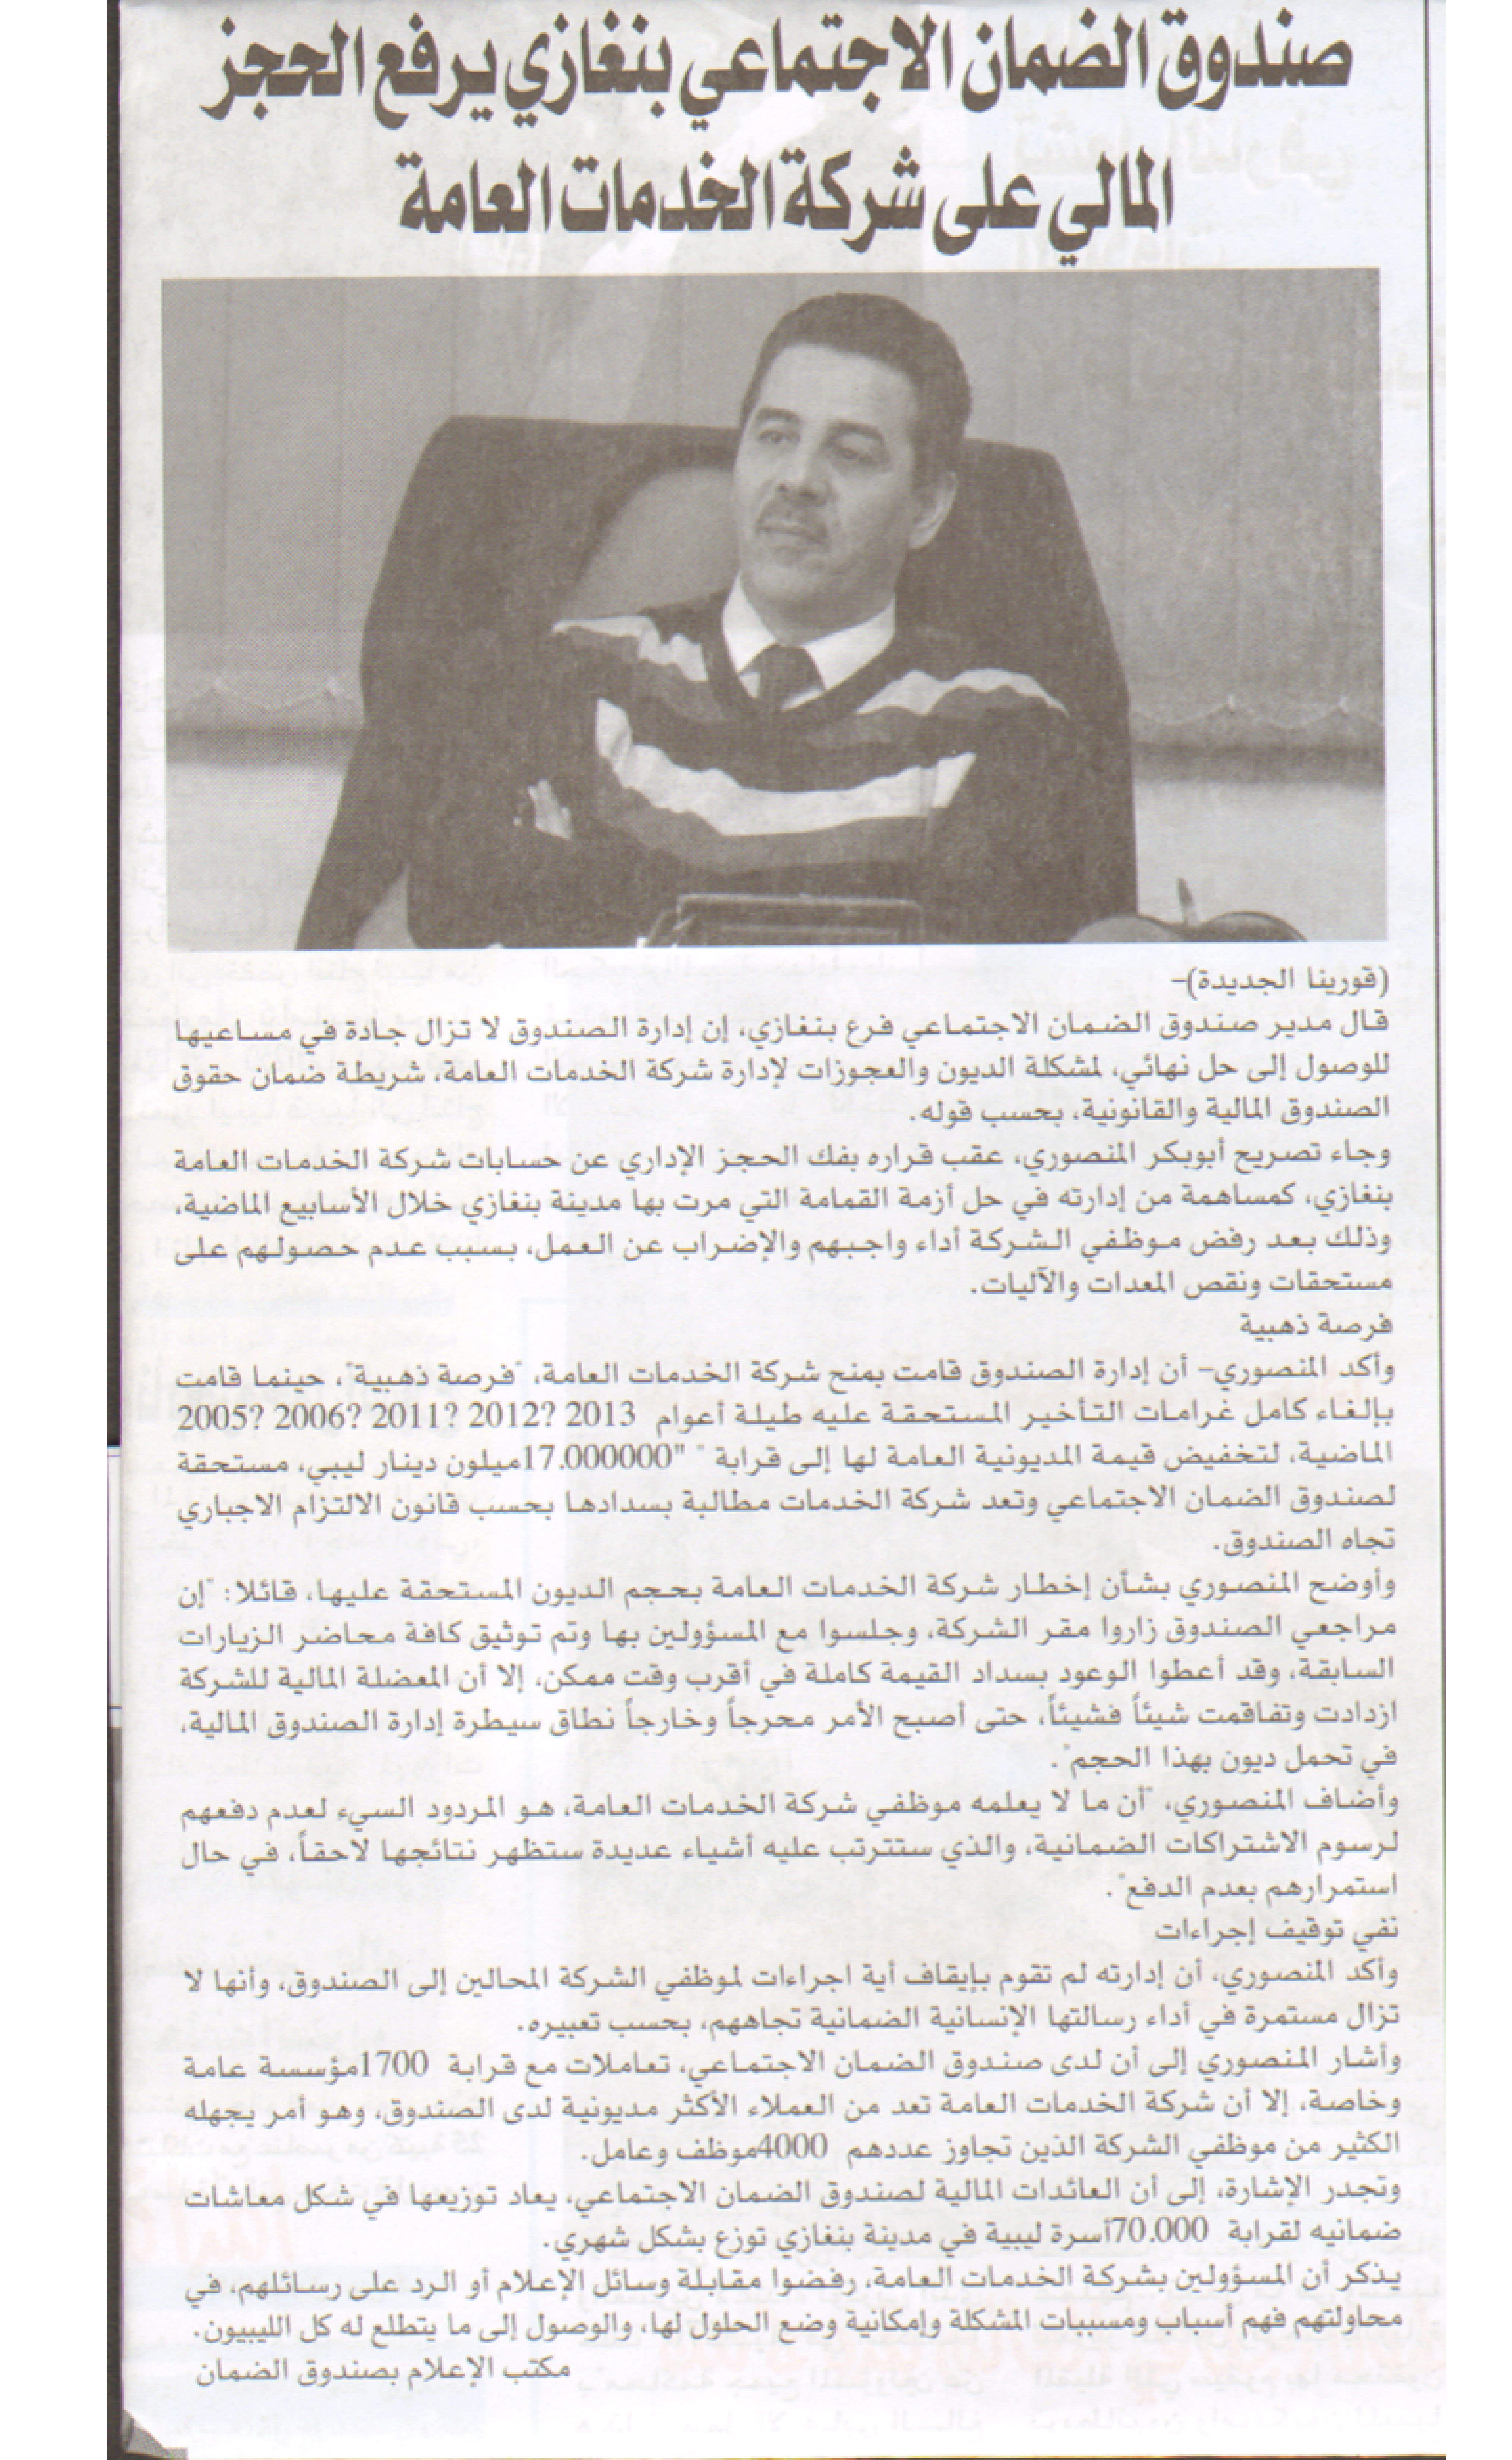 صحيفة قورينا الثلاثاء الموافق 24 ديسمبر 2013م العدد769